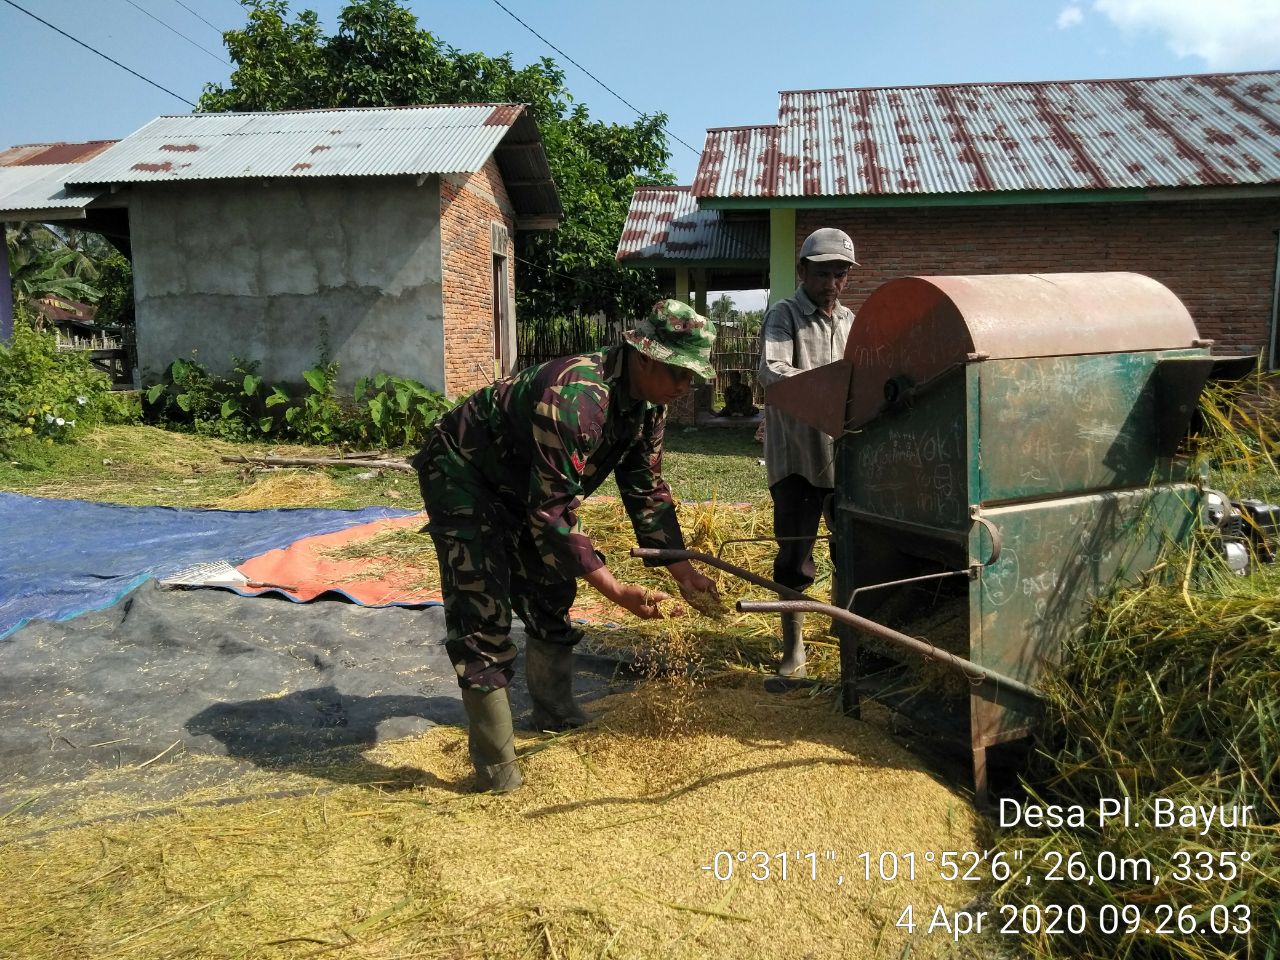 Bentuk Kemanunggalan TNI, Babinsa Koramil 06/Cerenti Dim 0302/Inhu Koptu Juanda Bantu Petani Perontokan Padi Di Desa Pulau Bayur.